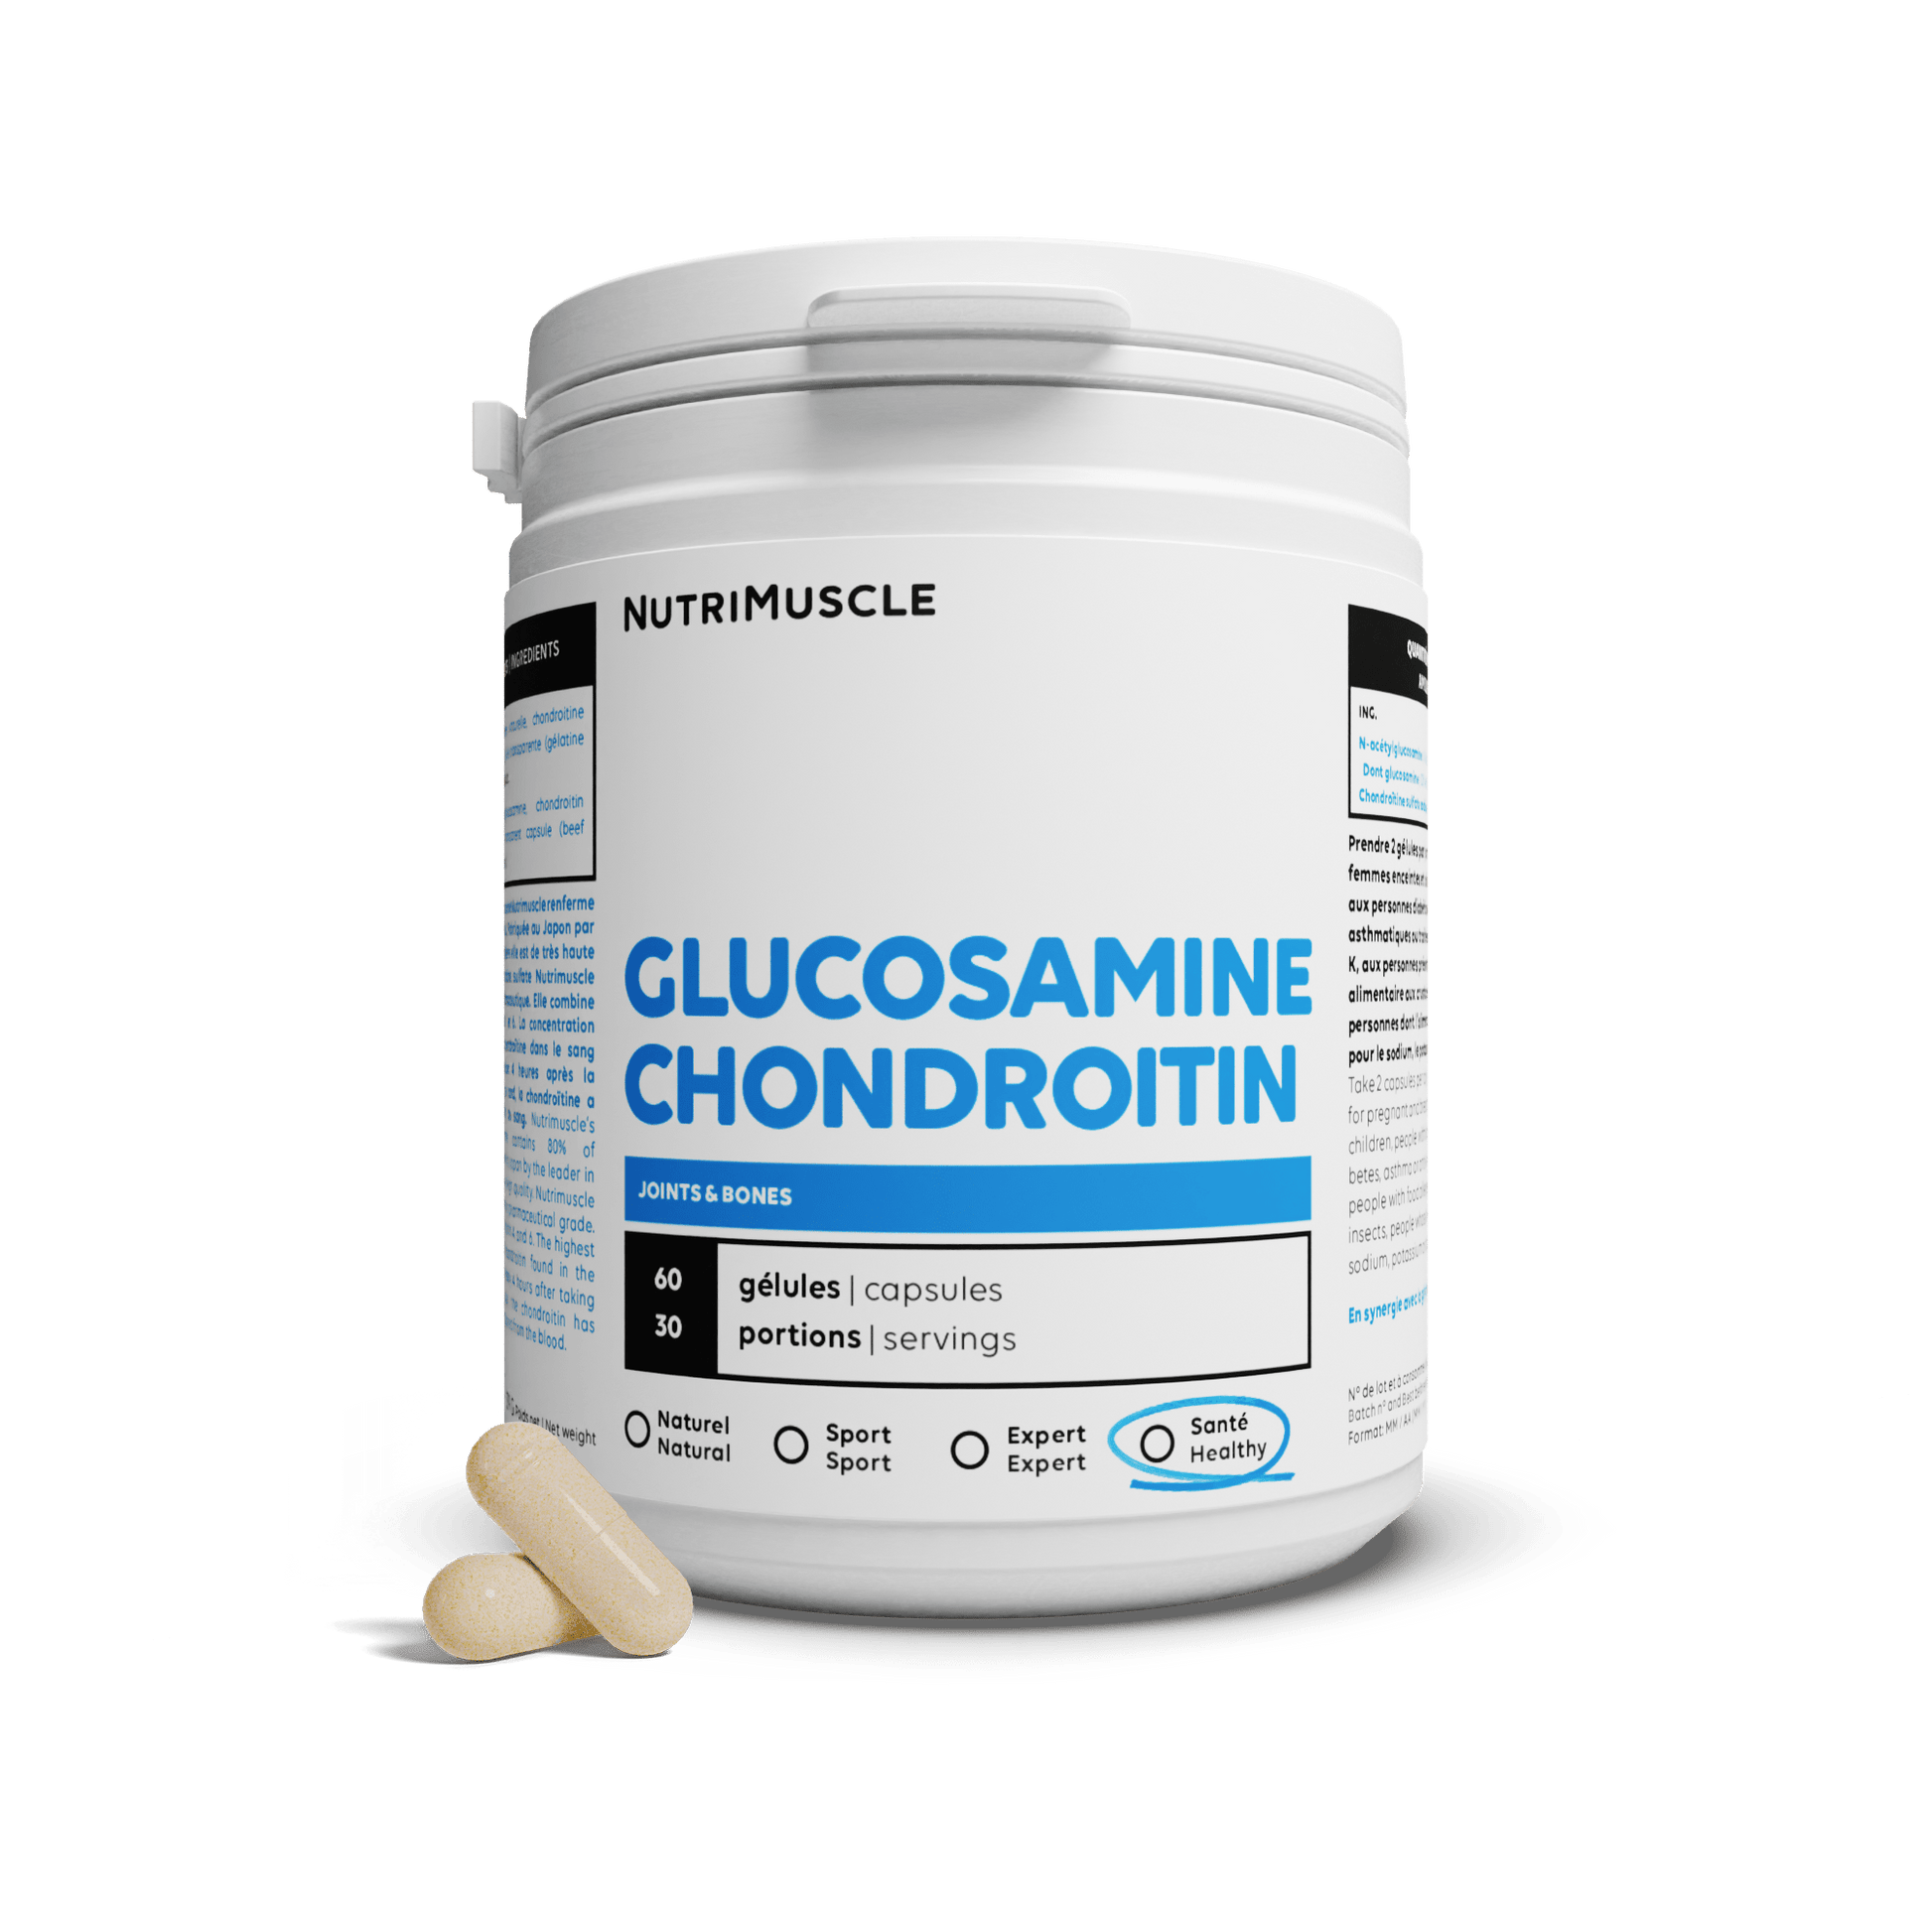 Nutrimuscle Nutriments 60 gélules Mix Glucosamine + Chondroïtine en gélules